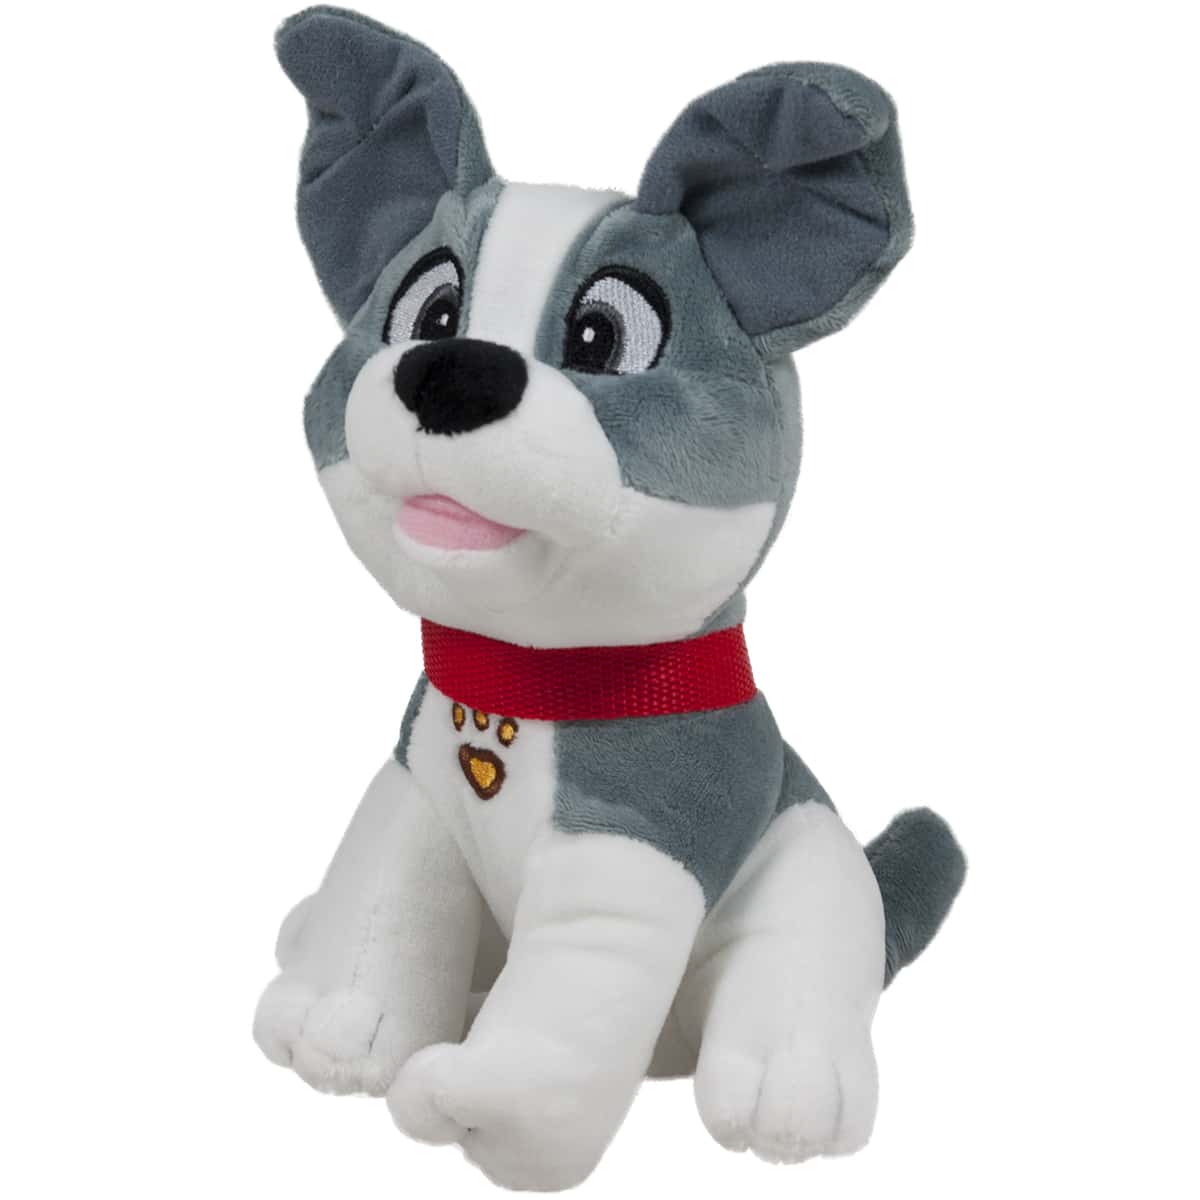 Dog with leash - Grey